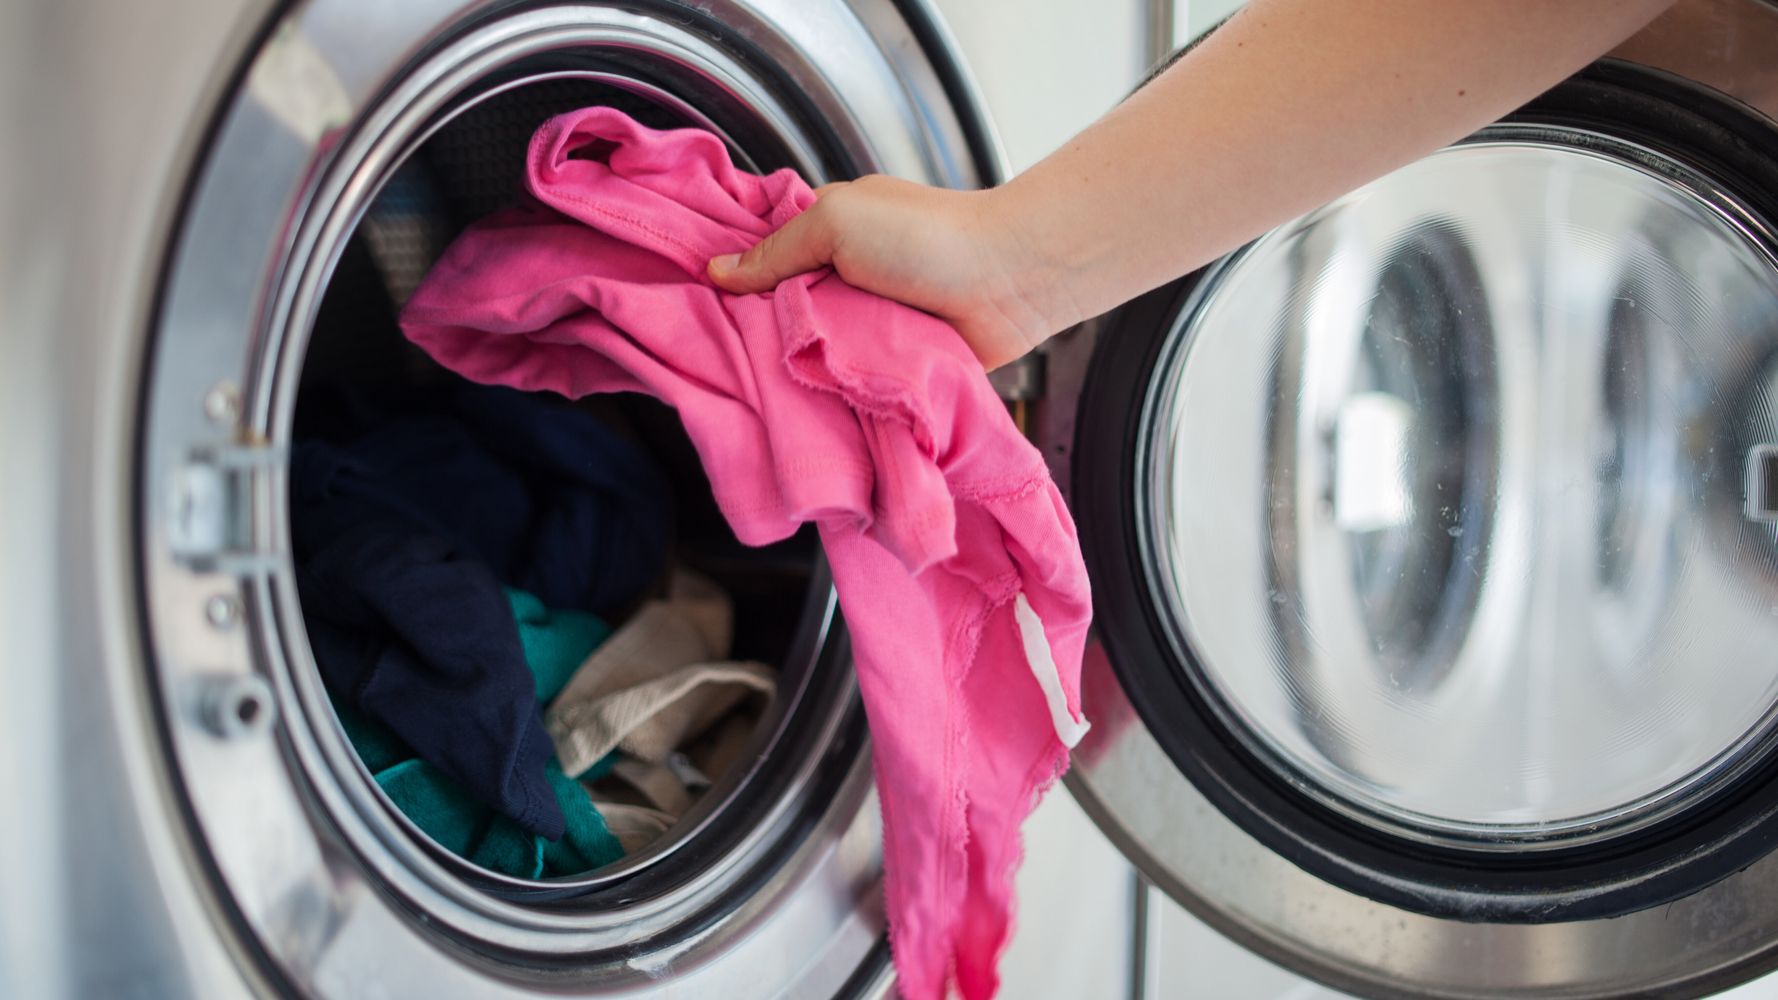 Sólo hay un tipo de tejido que soporta el lavado a 90 recomienda el Gobierno para la ropa de trabajo | El Life